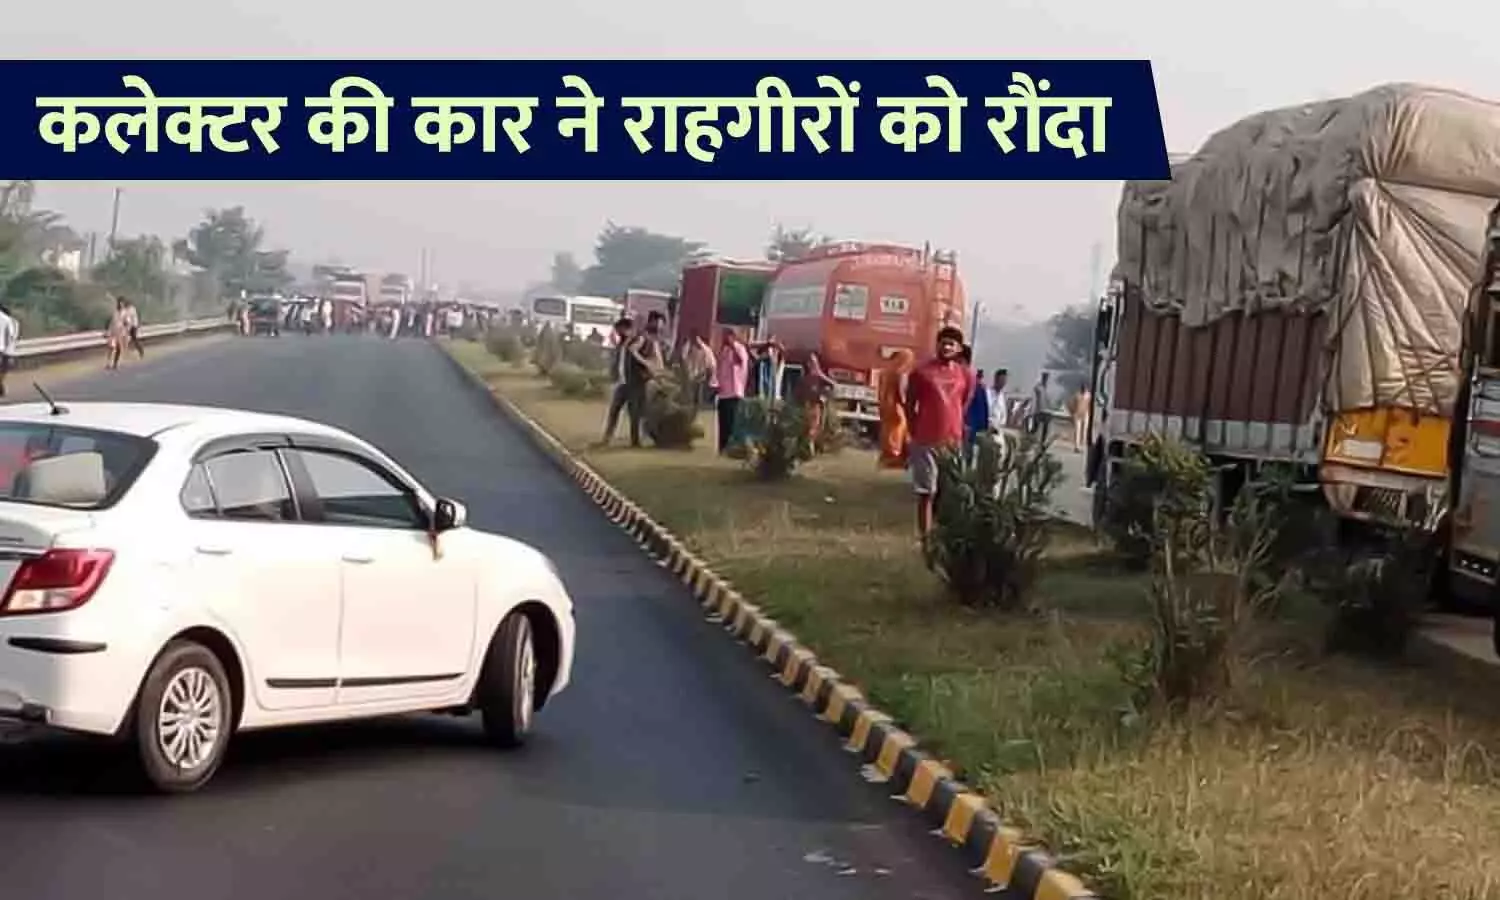 कलेक्टर की कार ने राहगीरों को रौंदा: DM के वाहन की चपेट में आने से 3 की मौत, एक अन्य की हालत गंभीर